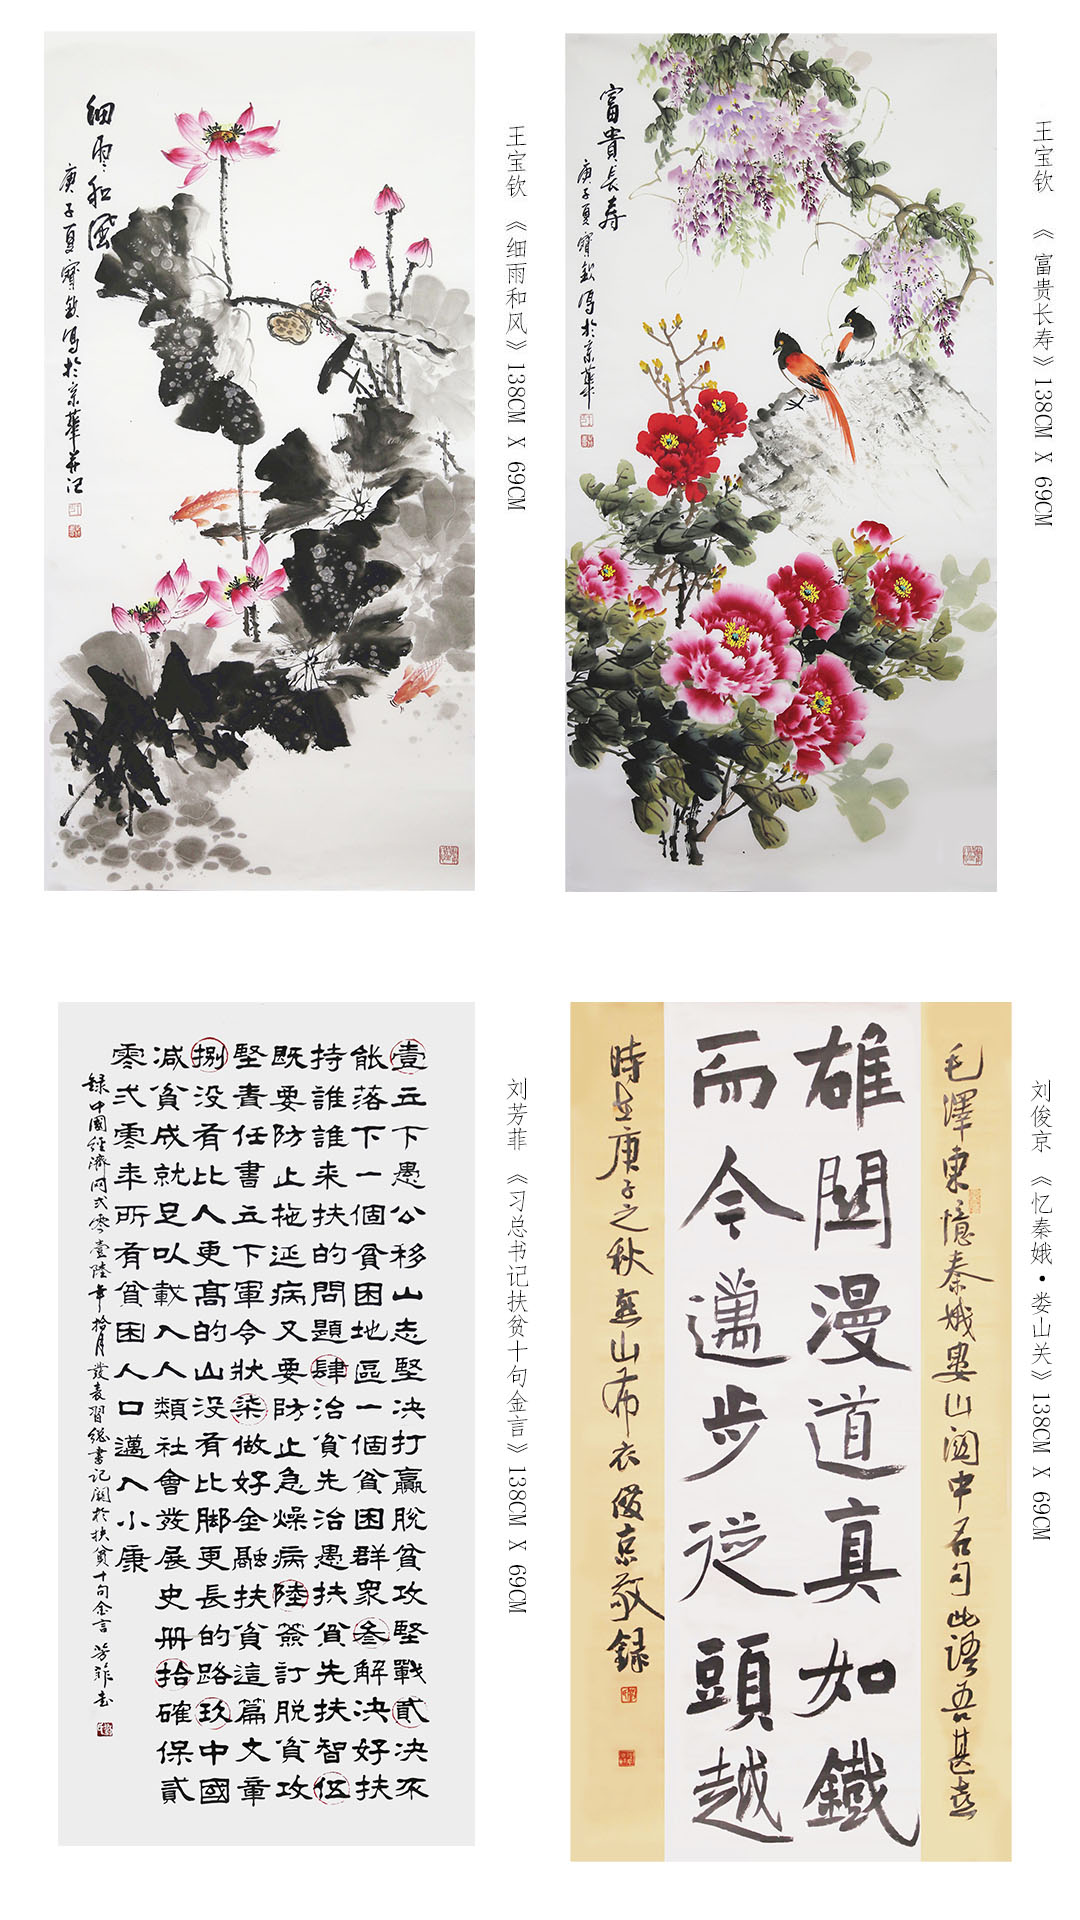 “以美扶志.山乡巨变”石墨烯书法美术作品展在北京精彩亮相